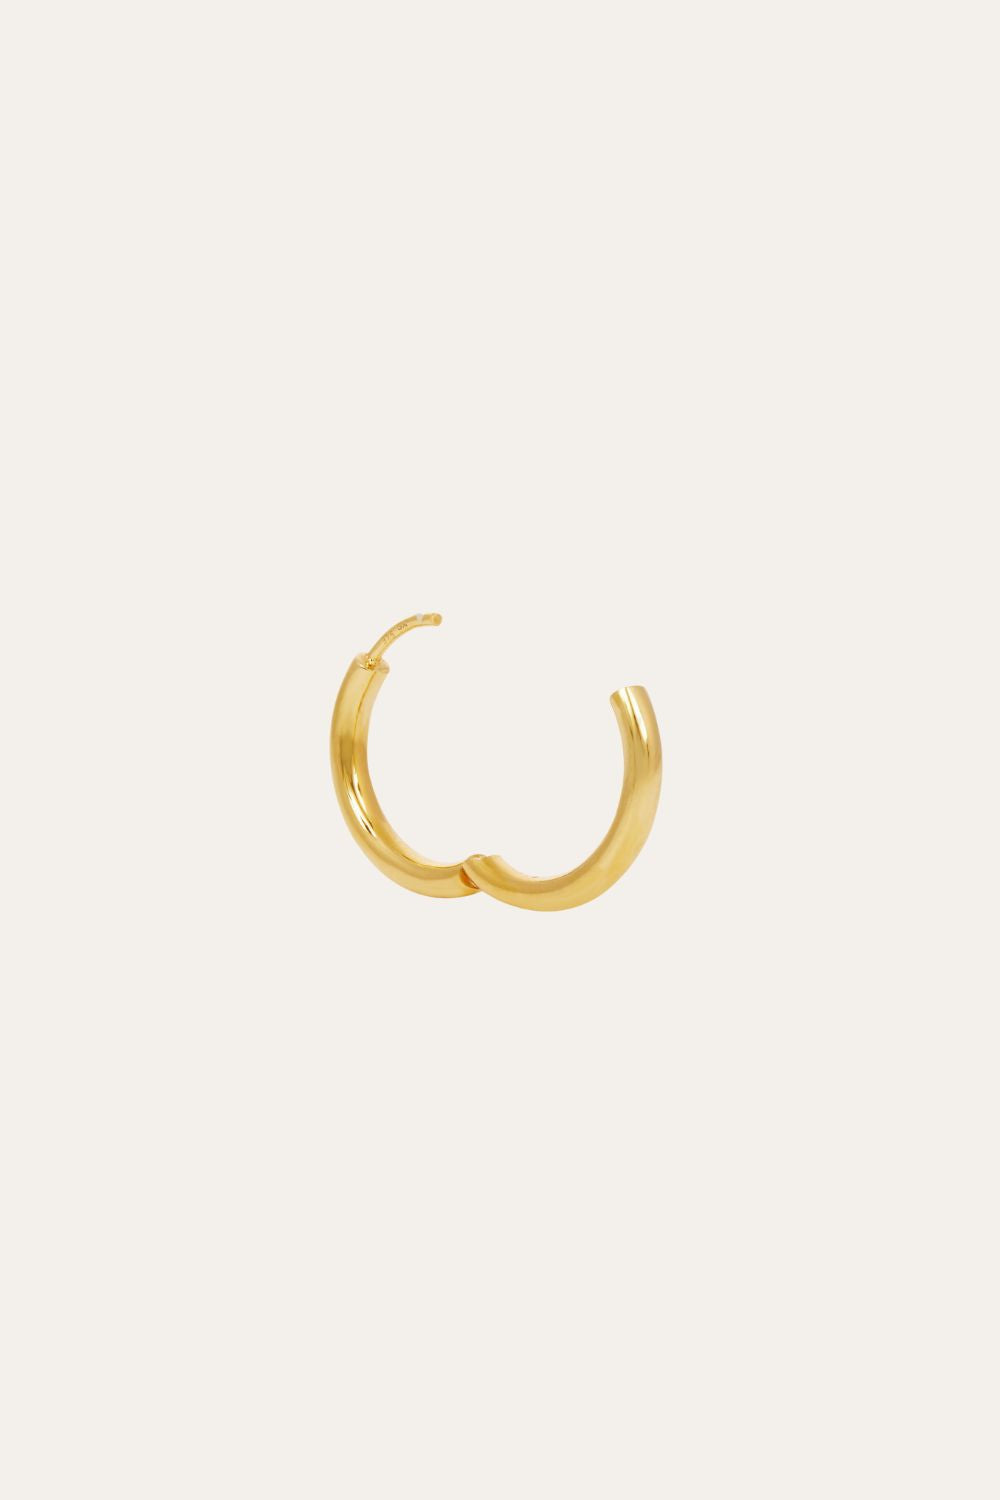 Simple 15mm gold vermeil mini hoop